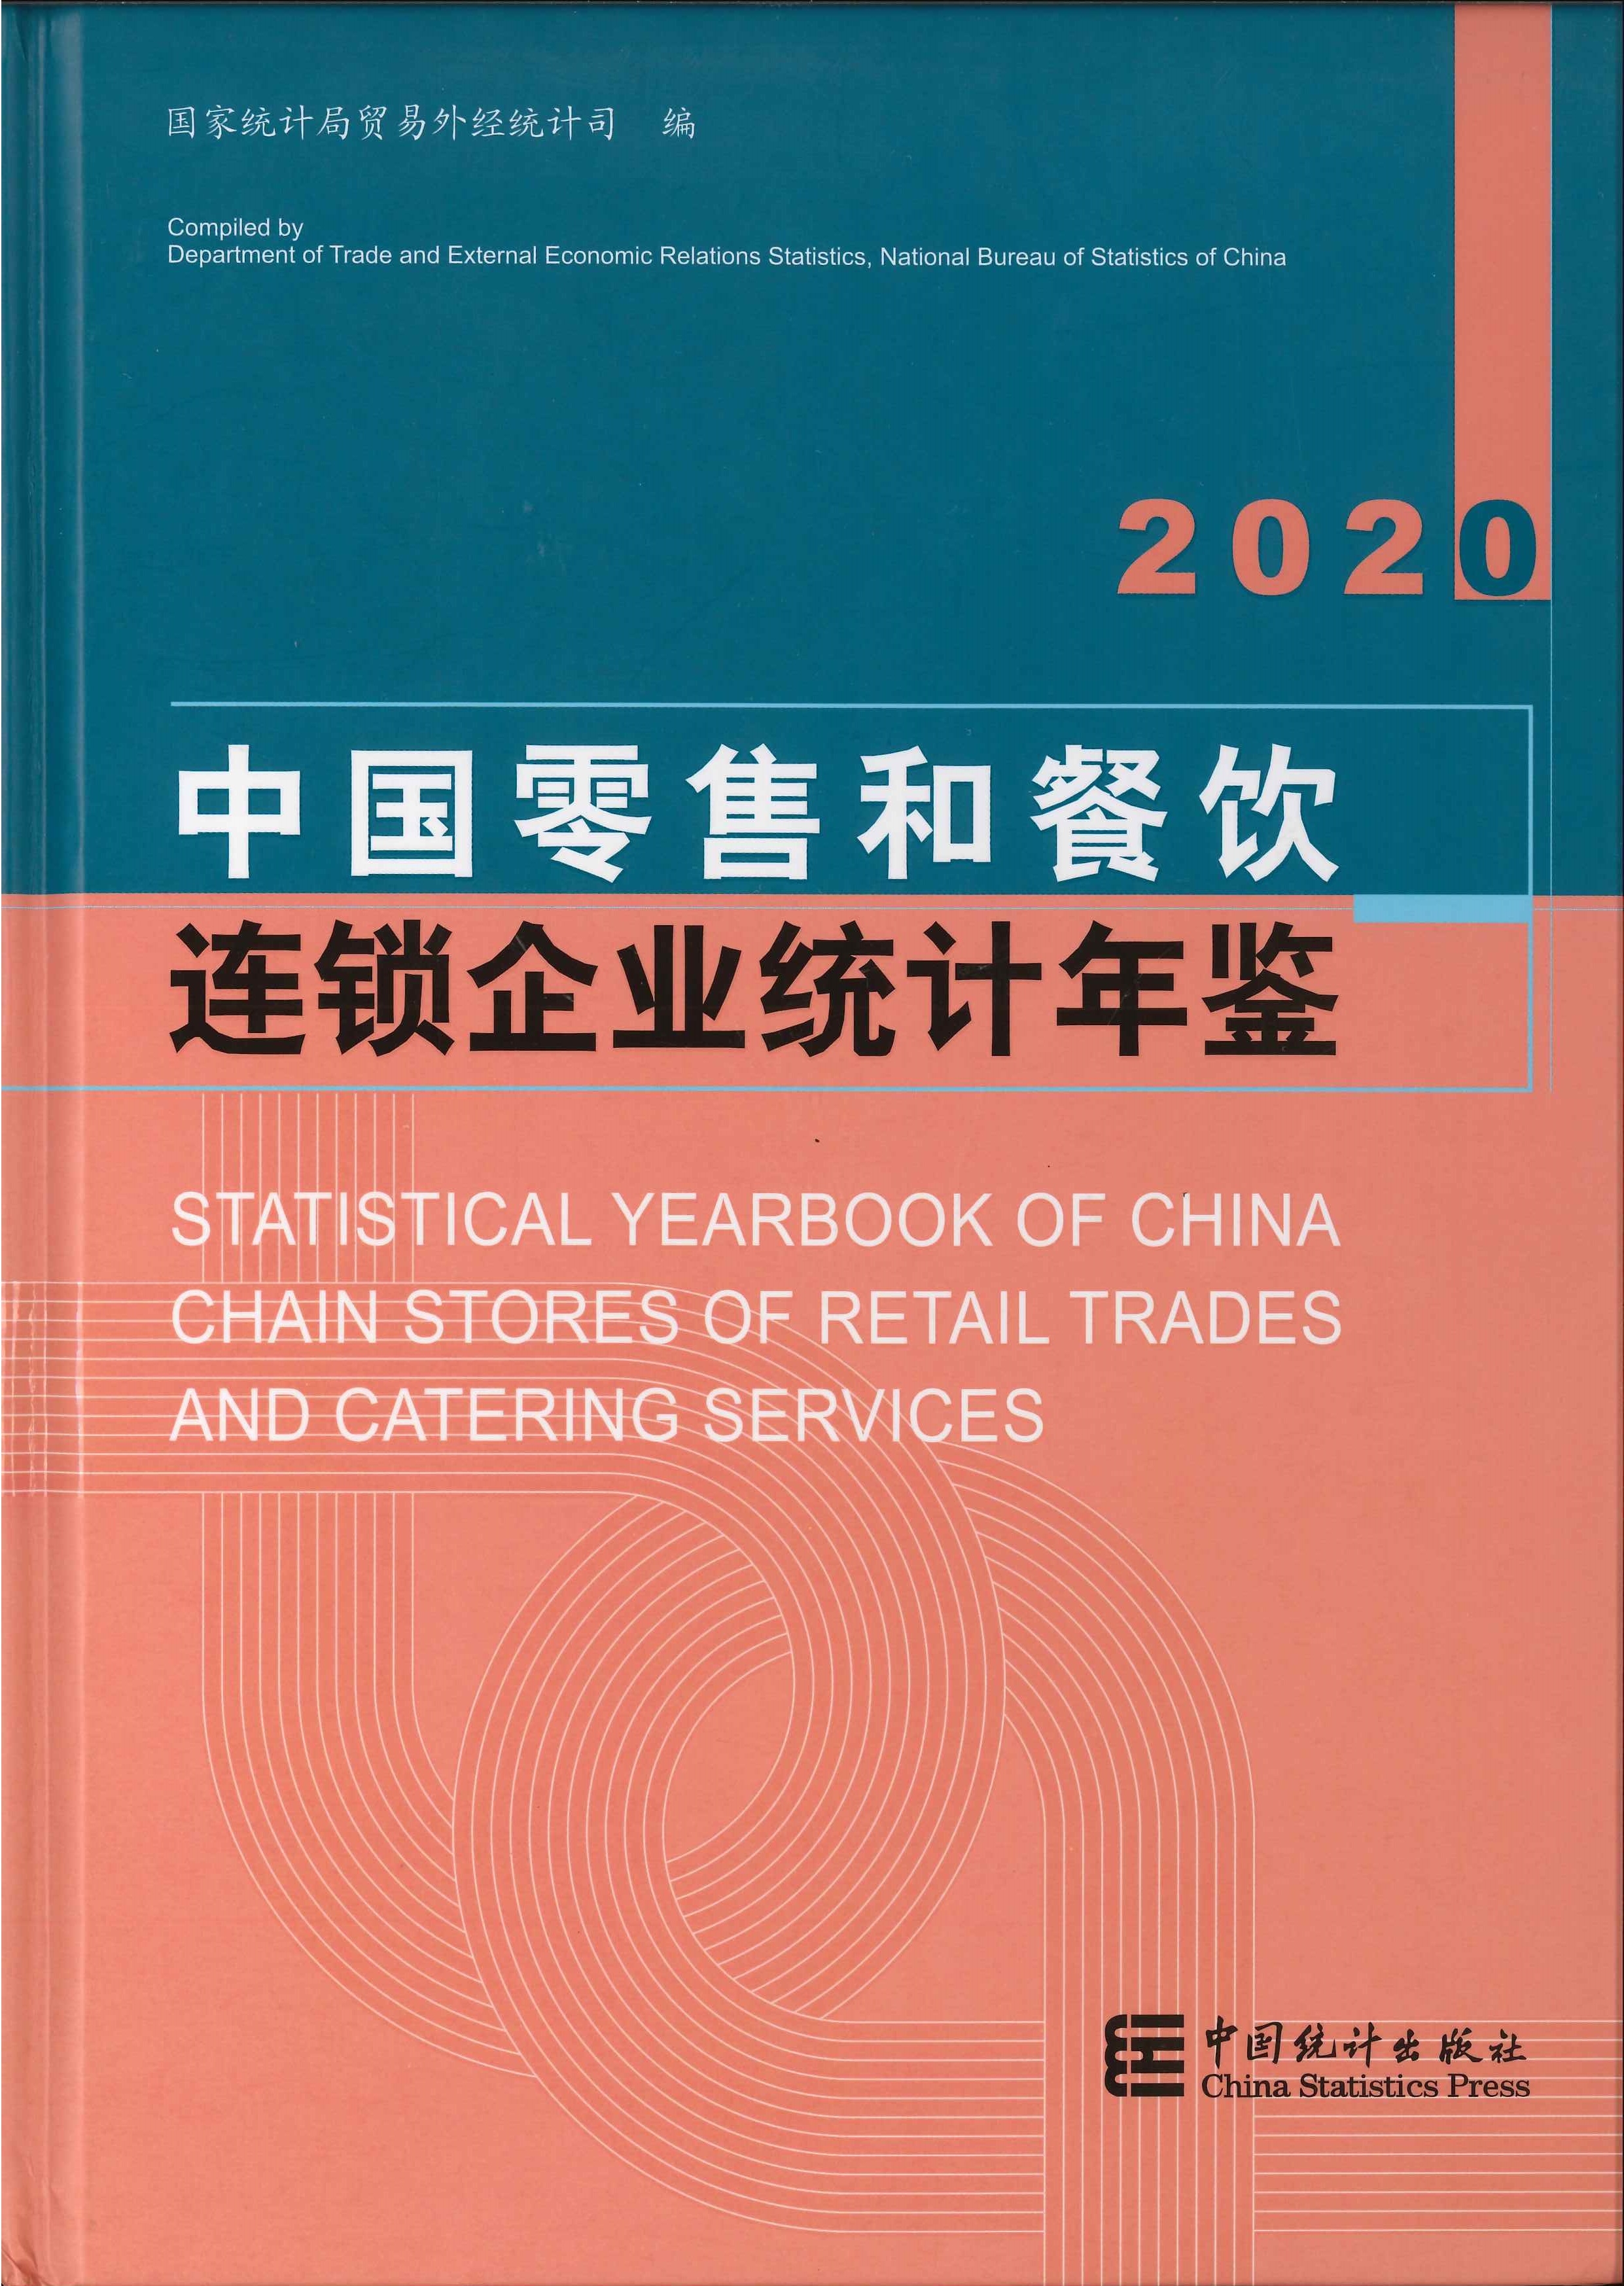 中国零售和餐饮连锁企业统计年鉴=Statistical yearbook of China chain stores of retail trades and catering services